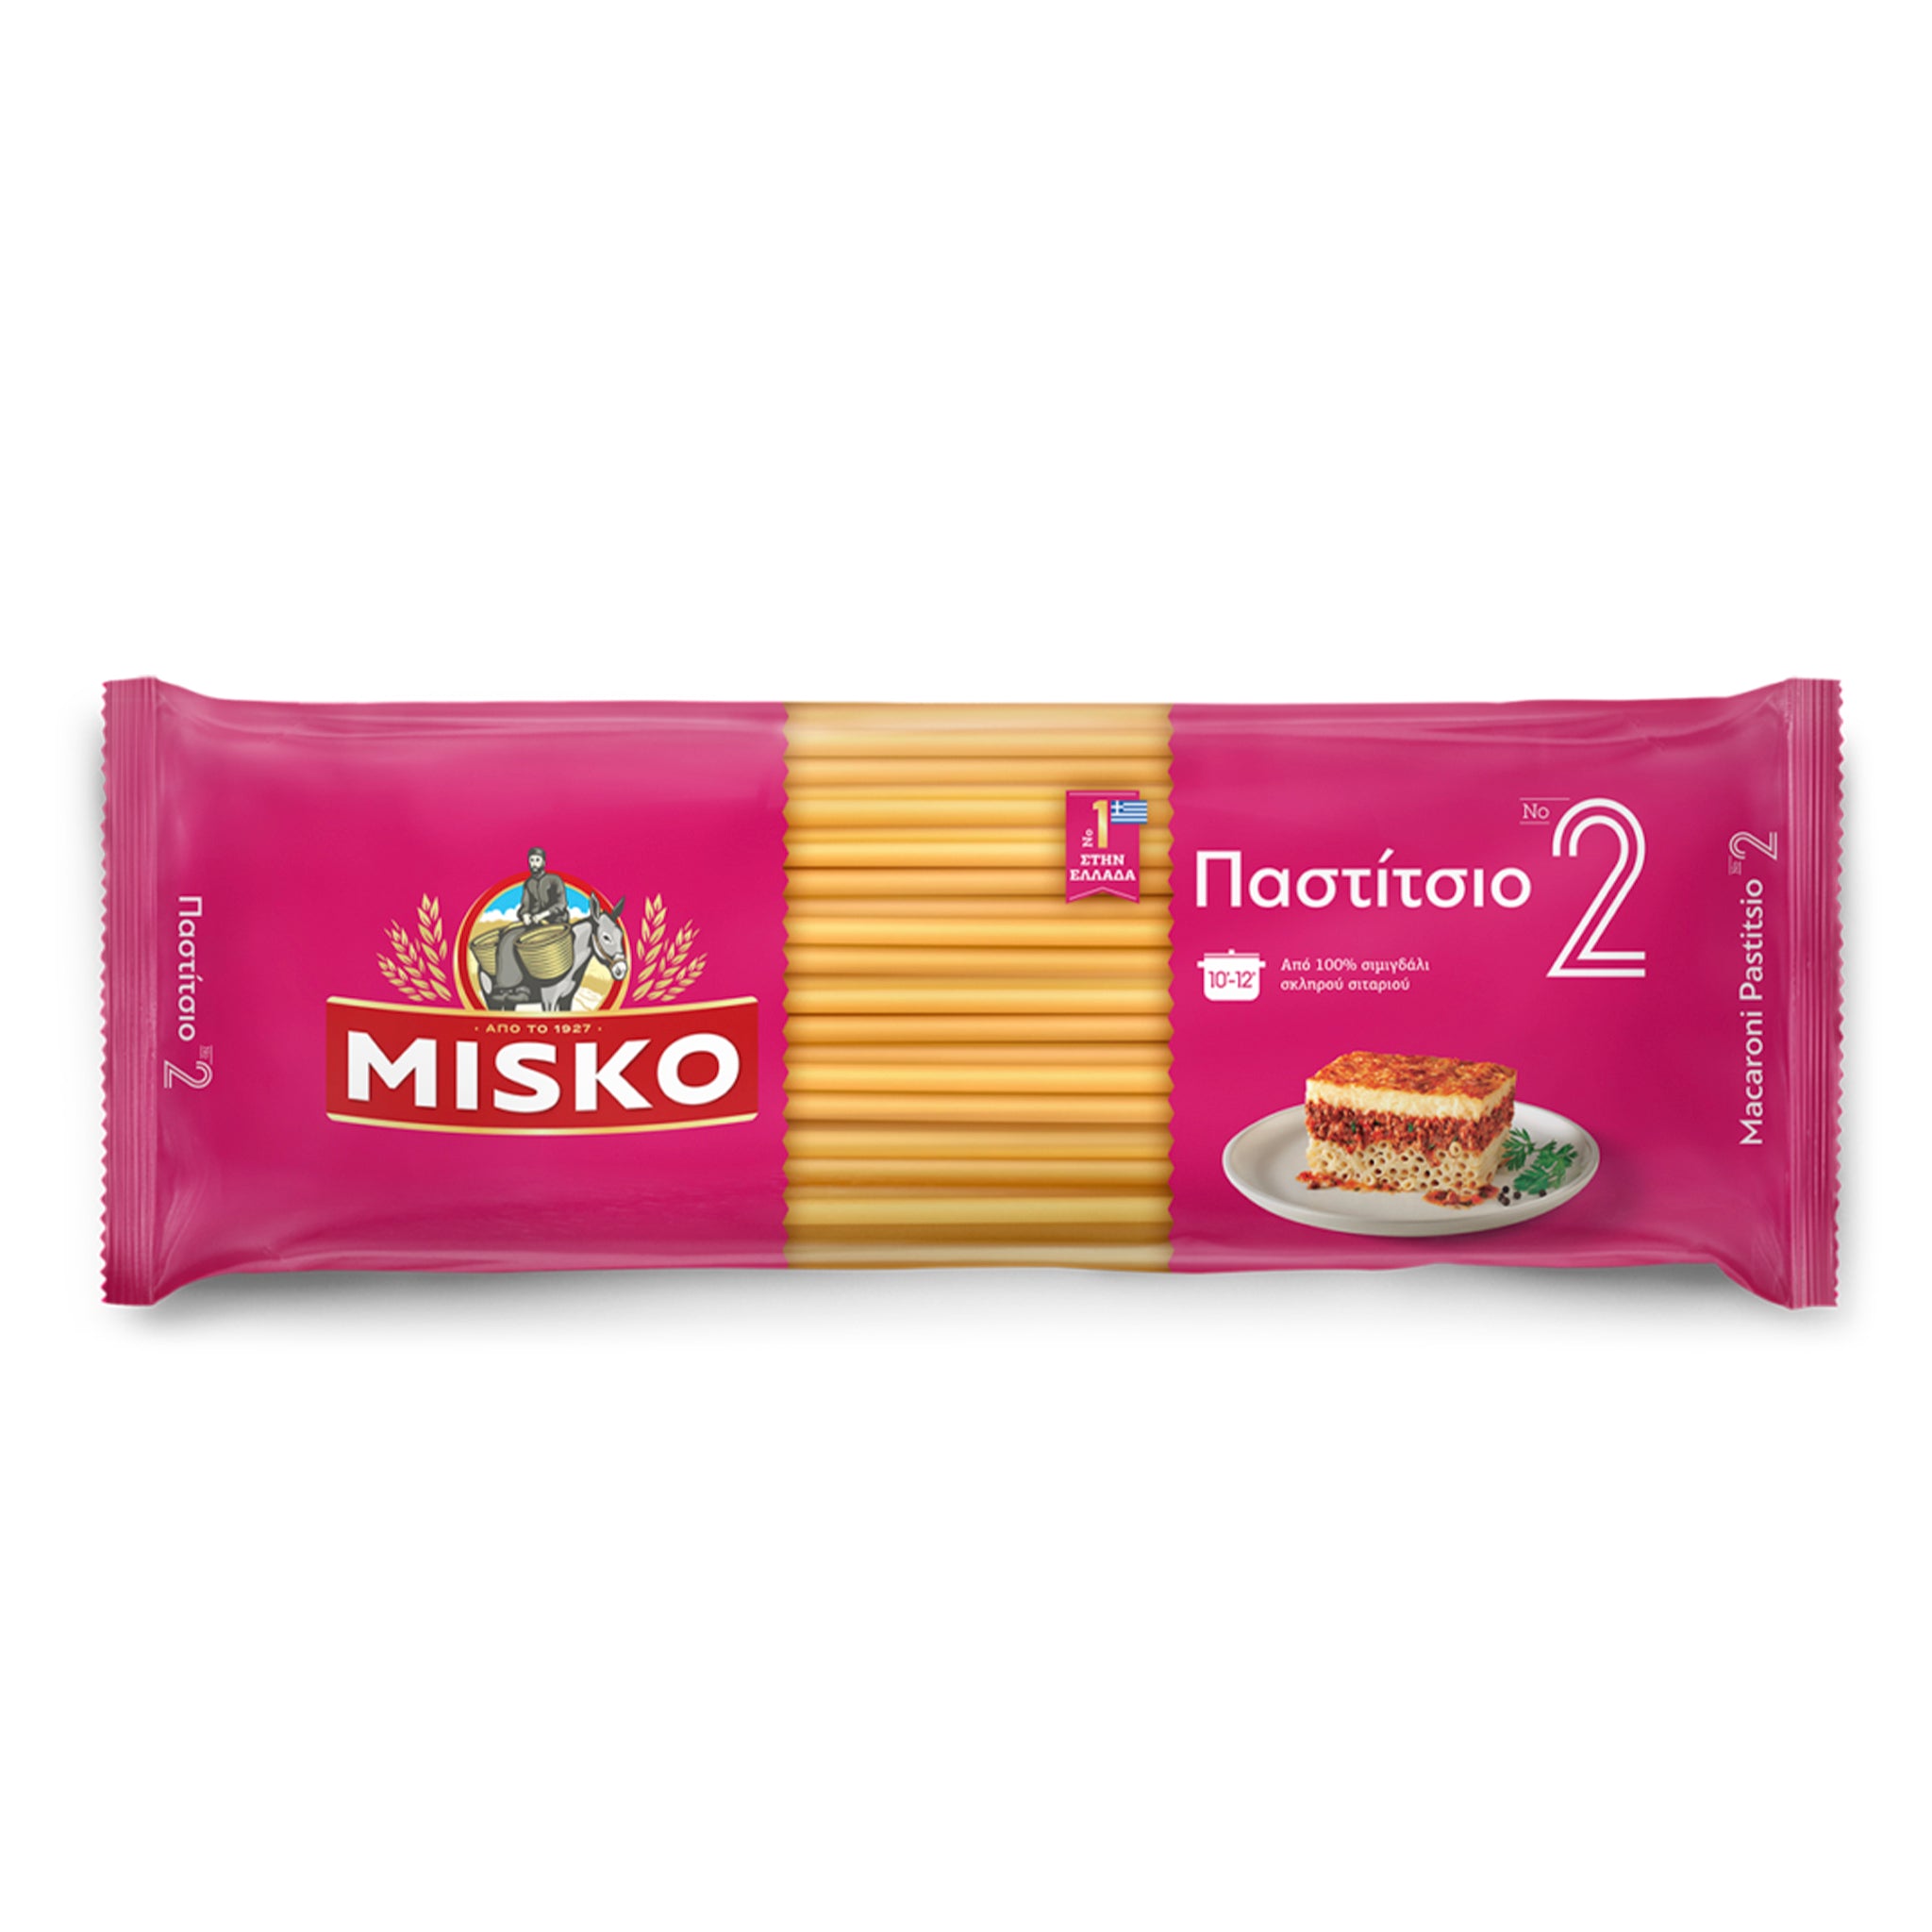 MISKO Macaroni Pastitsio No. 2 - 500gr